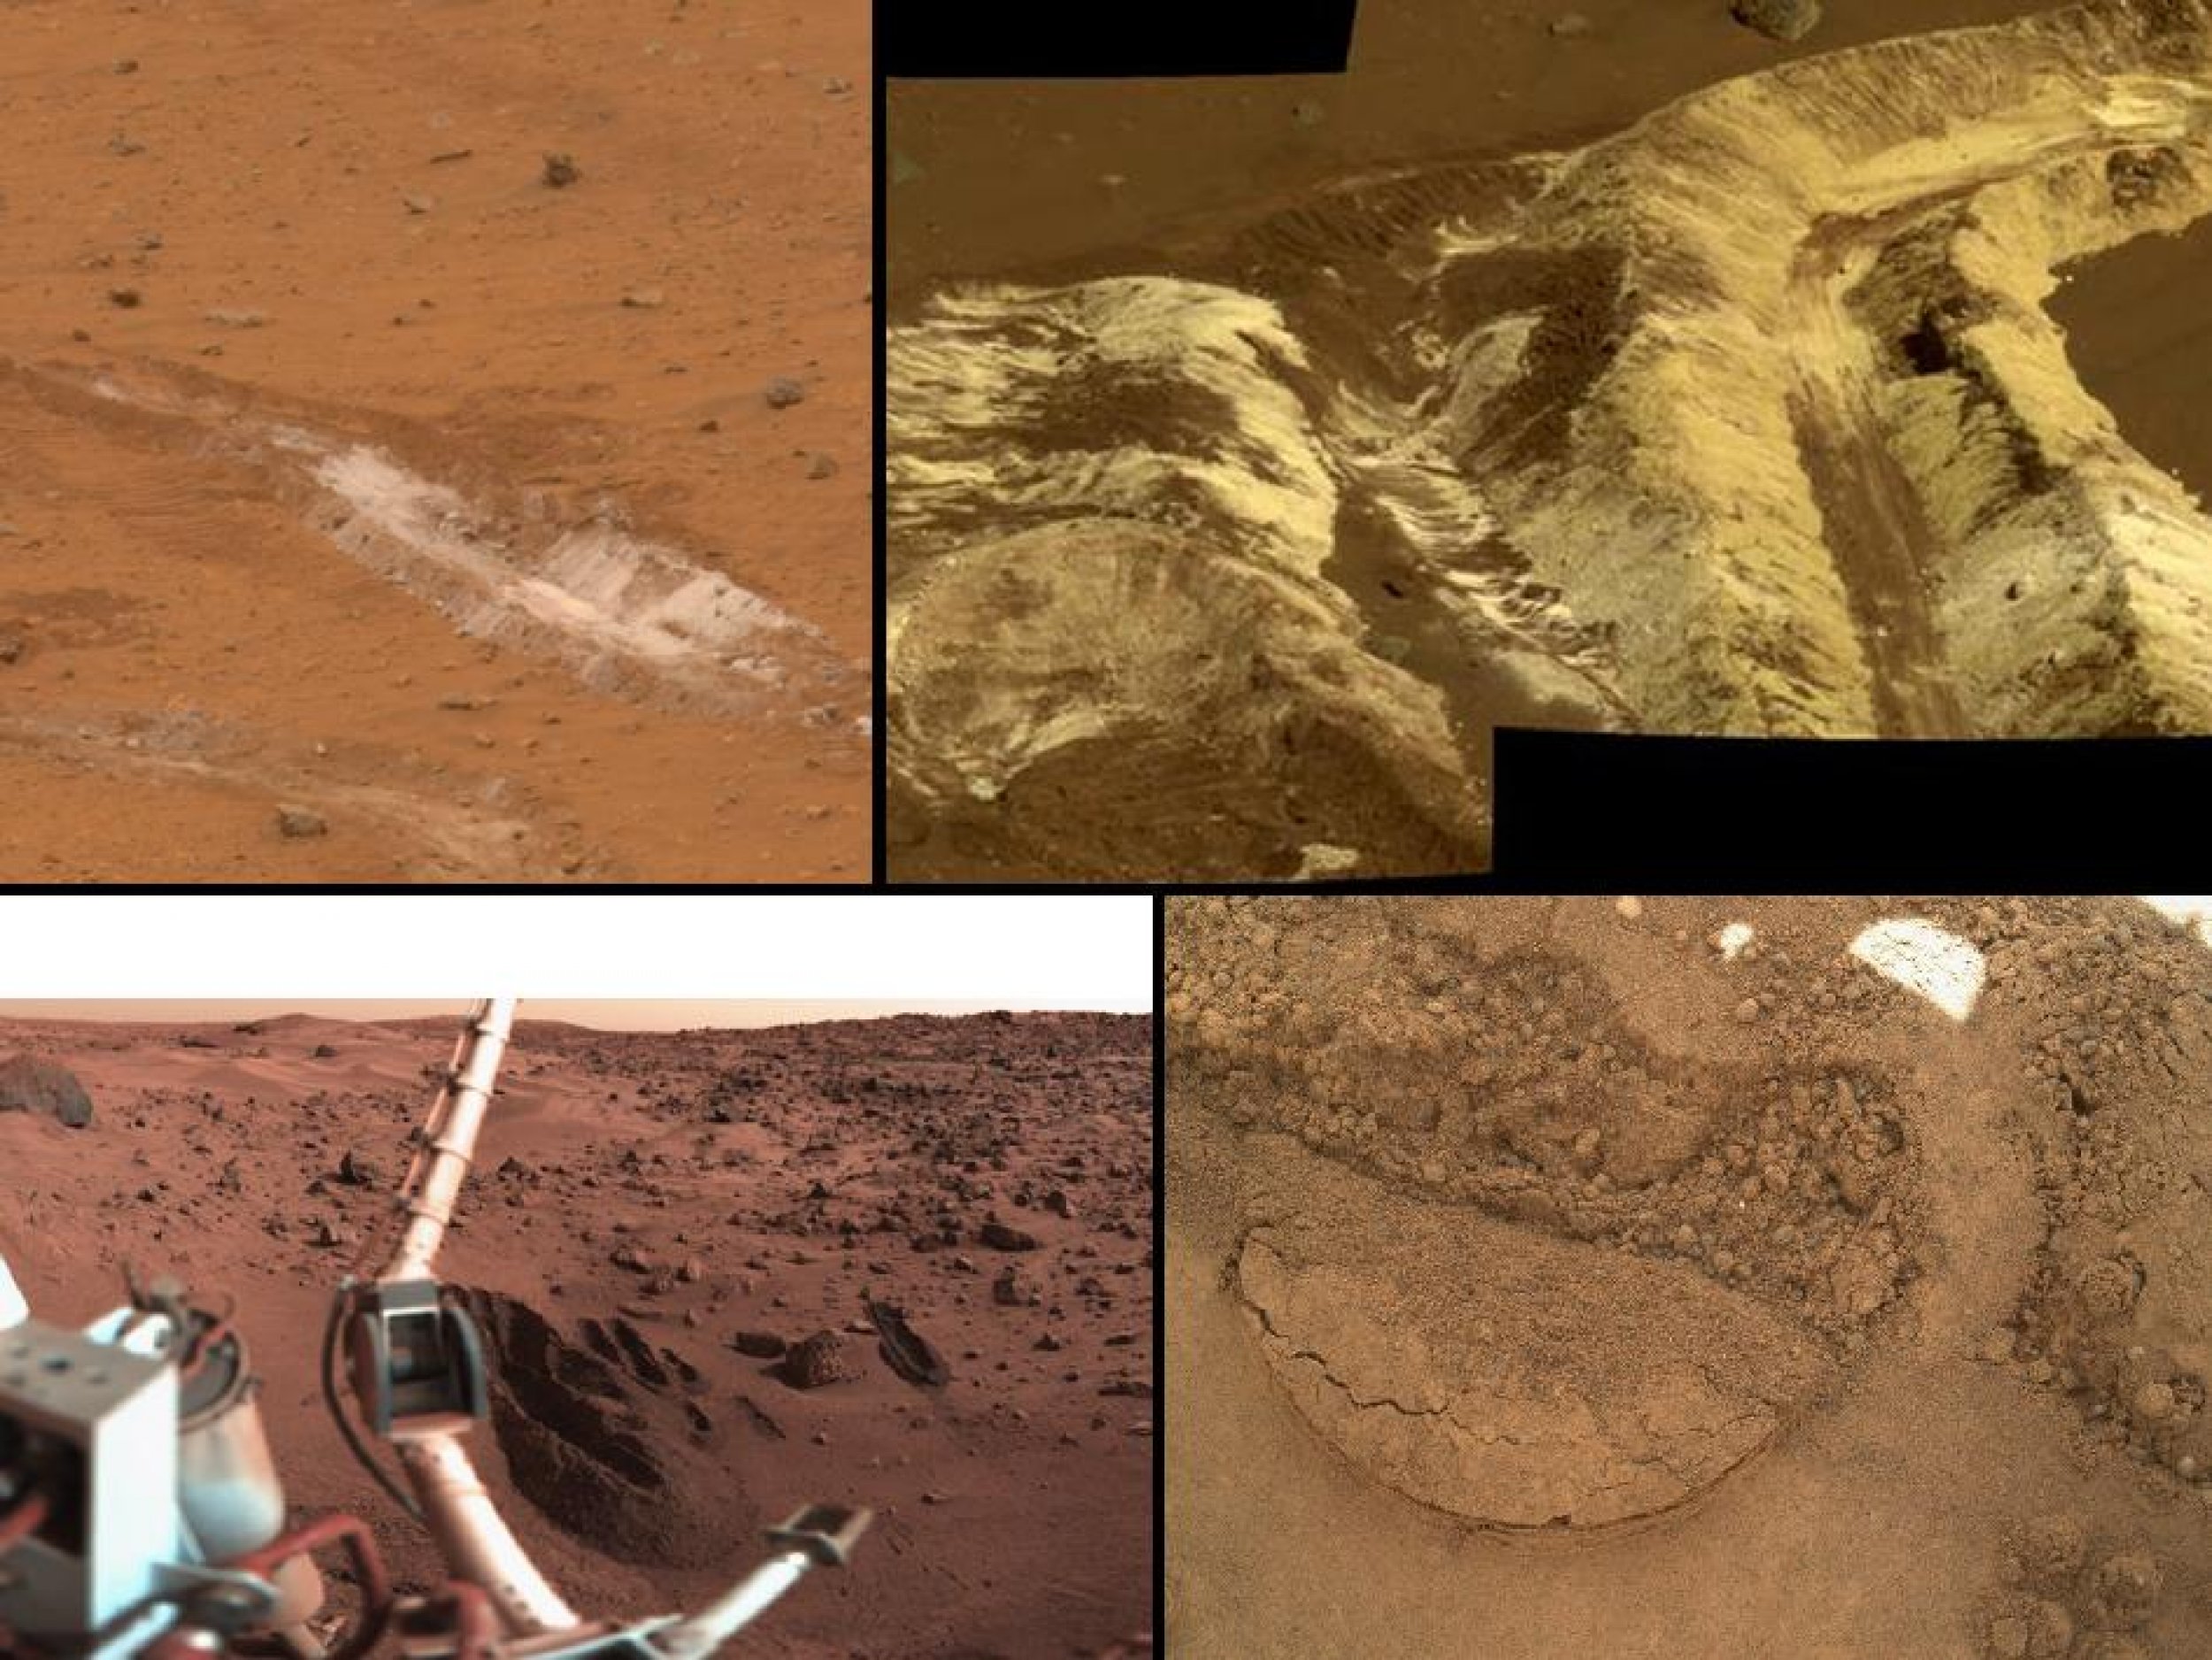 Есть ли жизнь на планете марс. Кратер Гейла на Марсе. Кратер Гусева марсоход спирит. Марсоход Кьюриосити посадка на Марс. Следы цивилизации на Марсе.